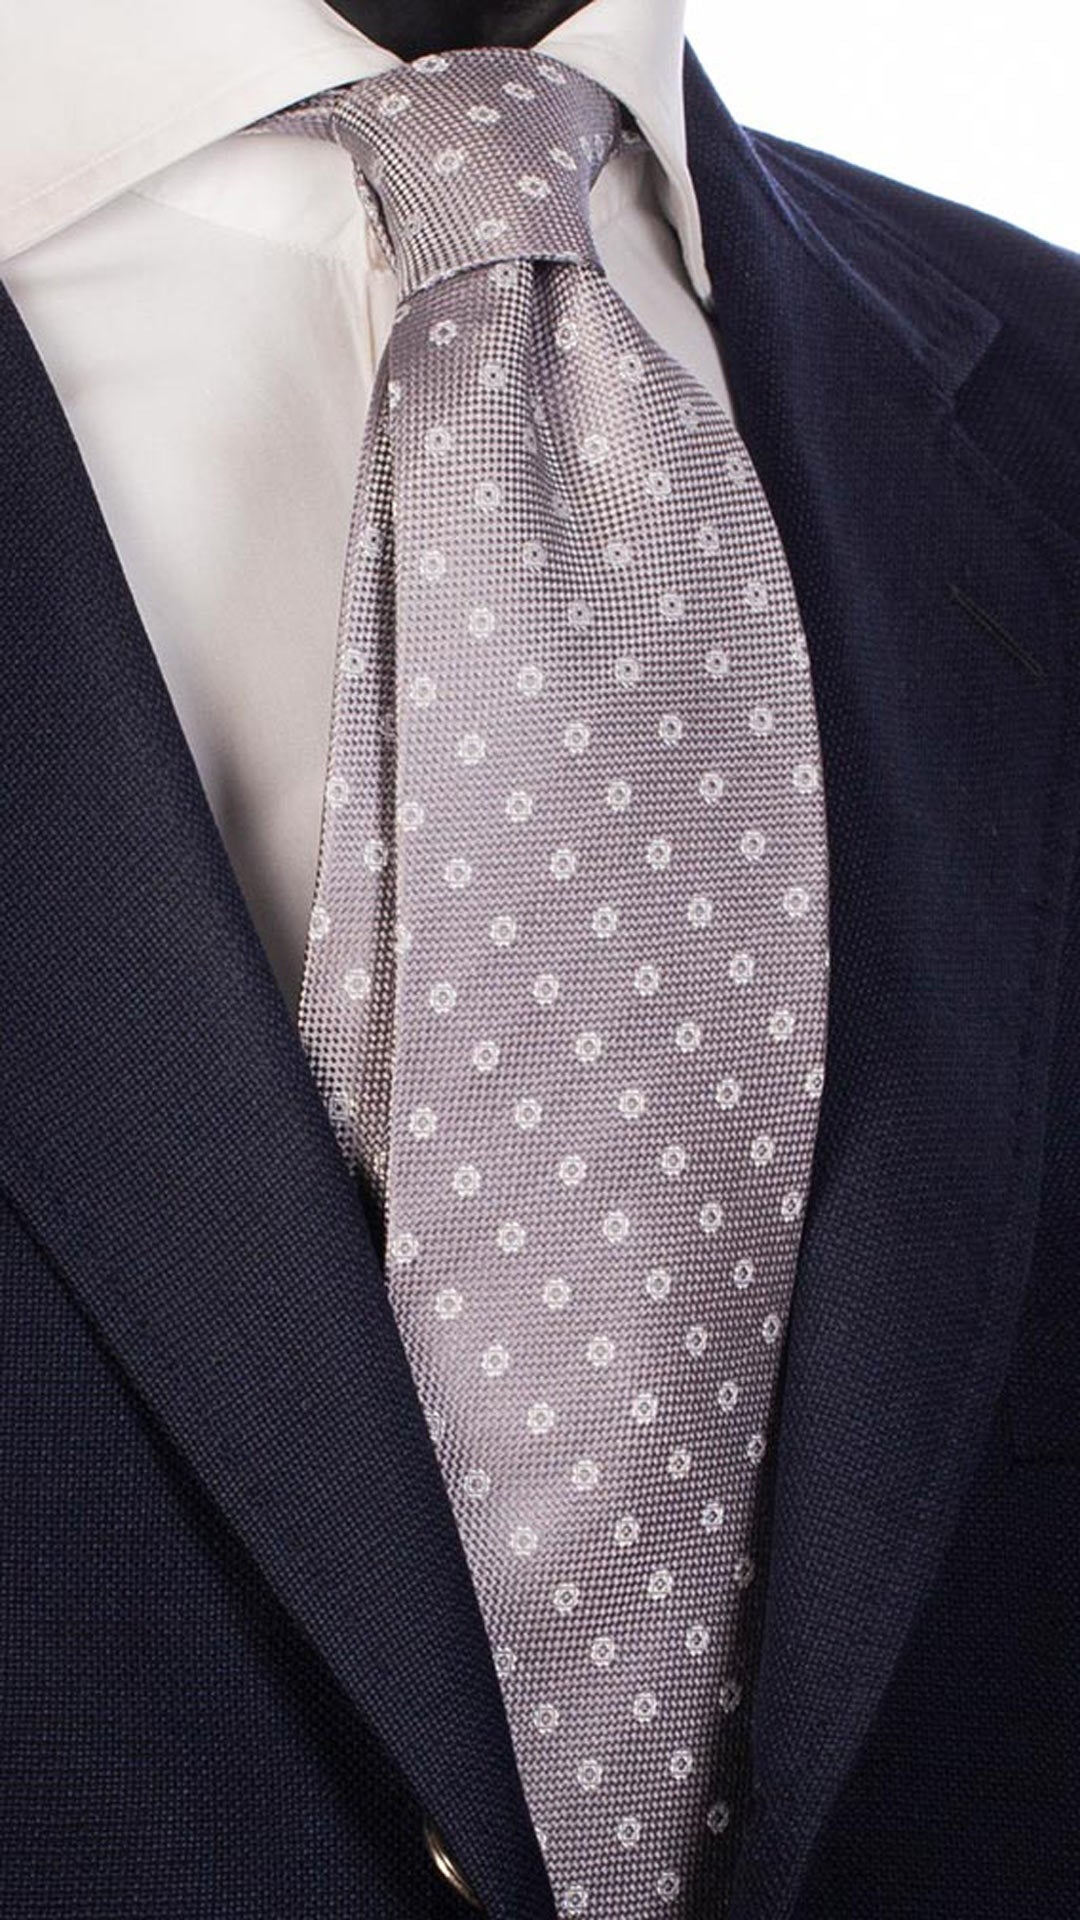 Cravatta da Cerimonia di Seta Grigio Chiaro Fantasia Bianca CY4720 Made in Italy Graffeo Cravatte